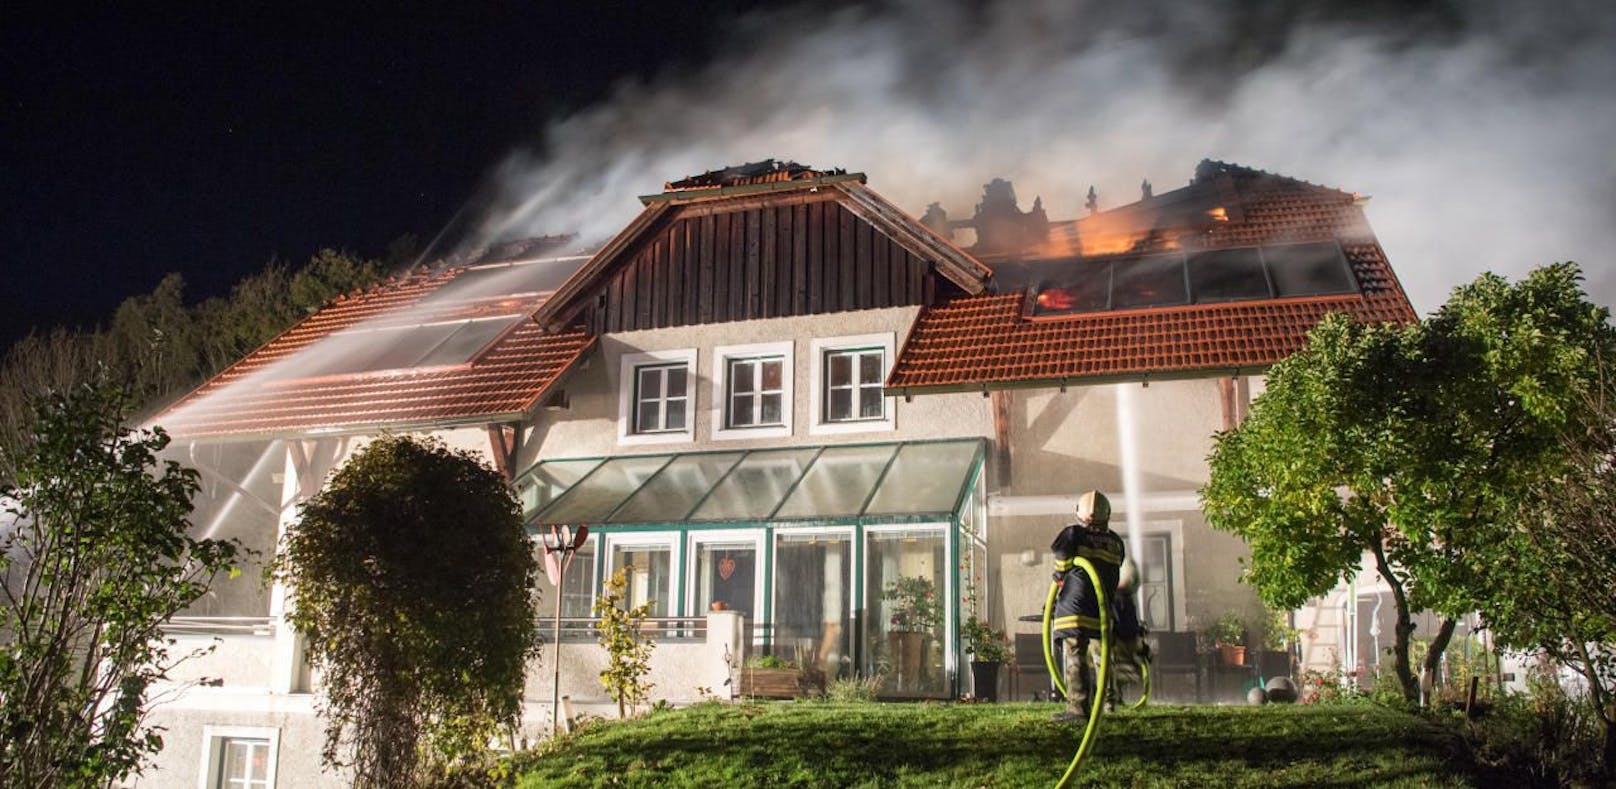 Großeinsatz der Feuerwehr bei Wohnhausbrand